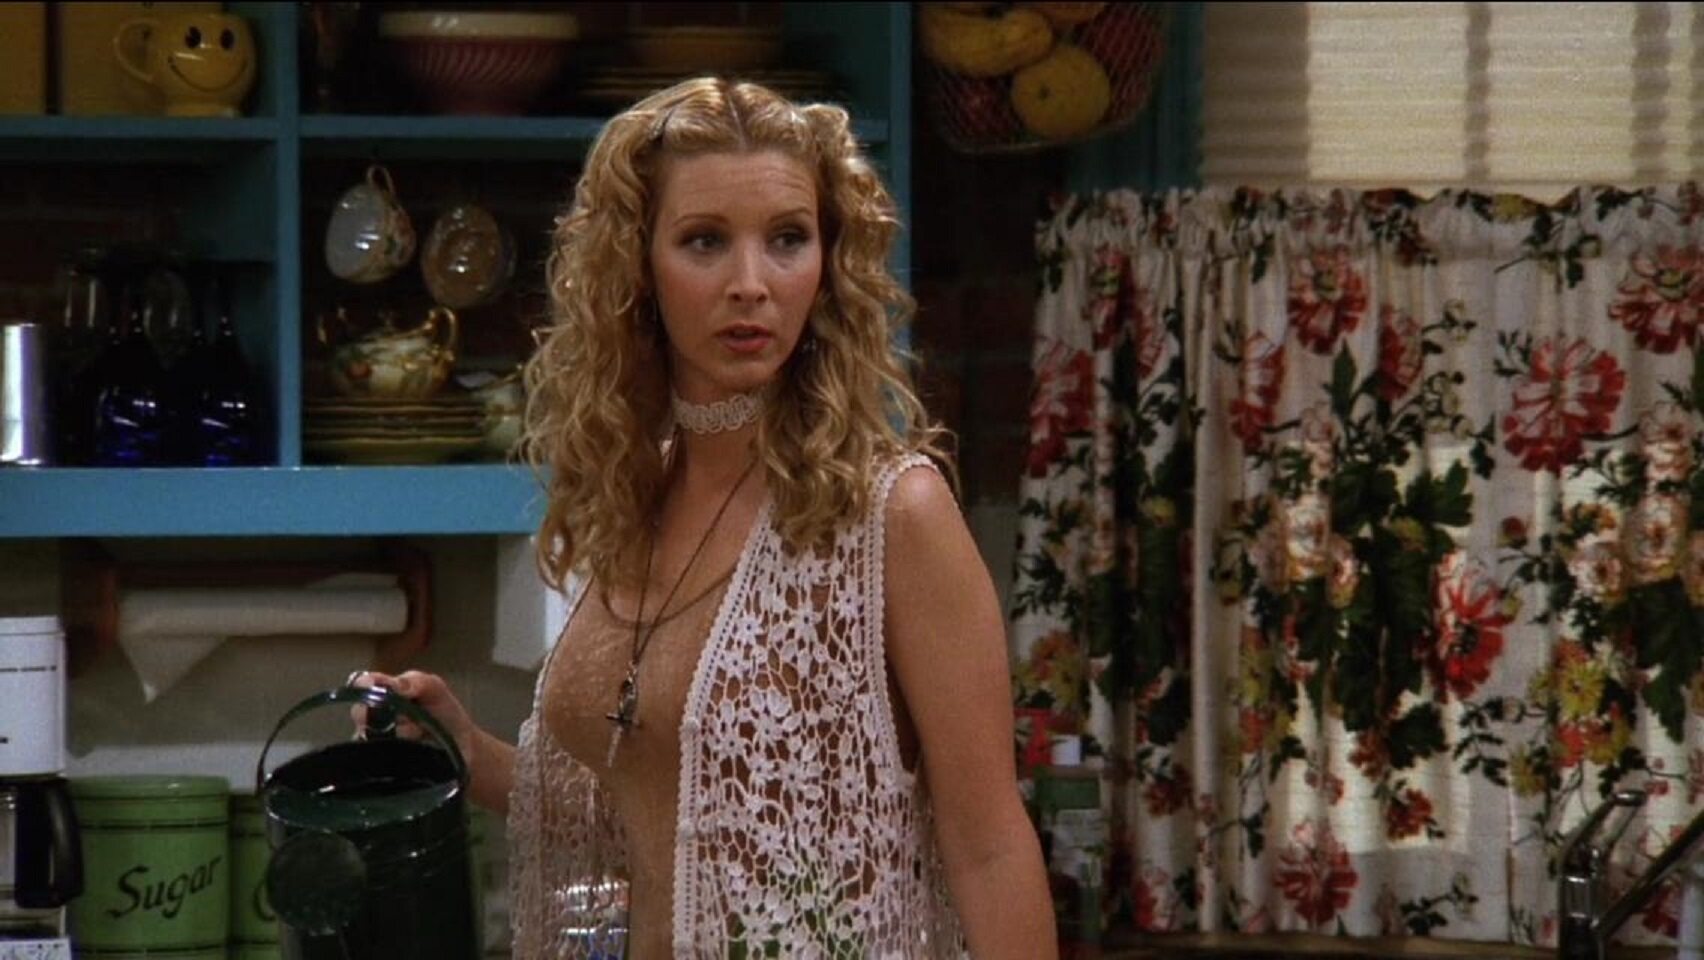 Jaki był największy hit Phoebe?